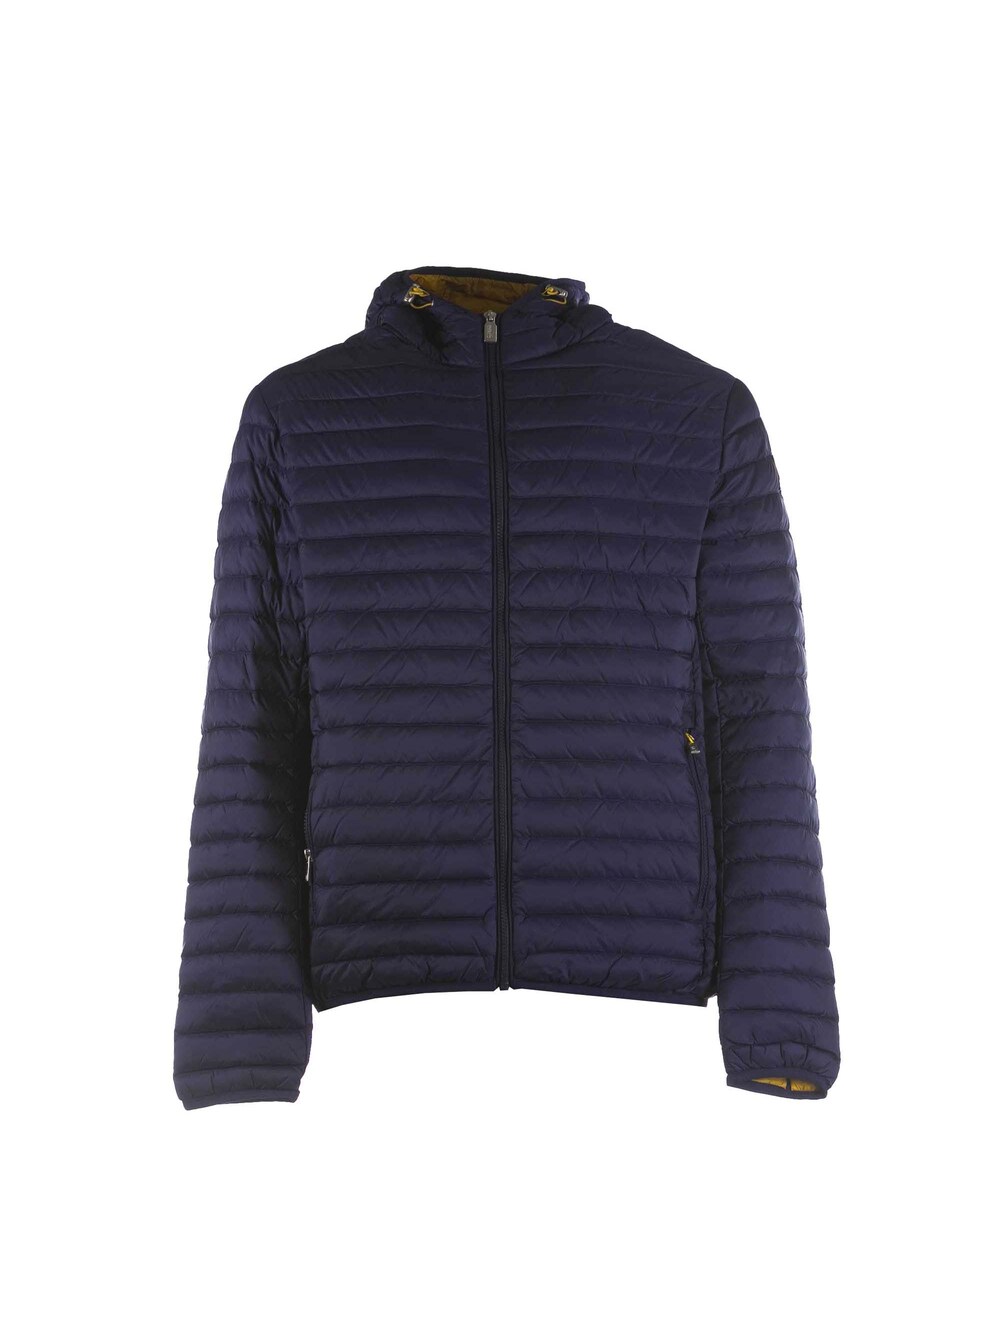 Зимняя куртка Ciesse Piumini Larry, синий цена и фото